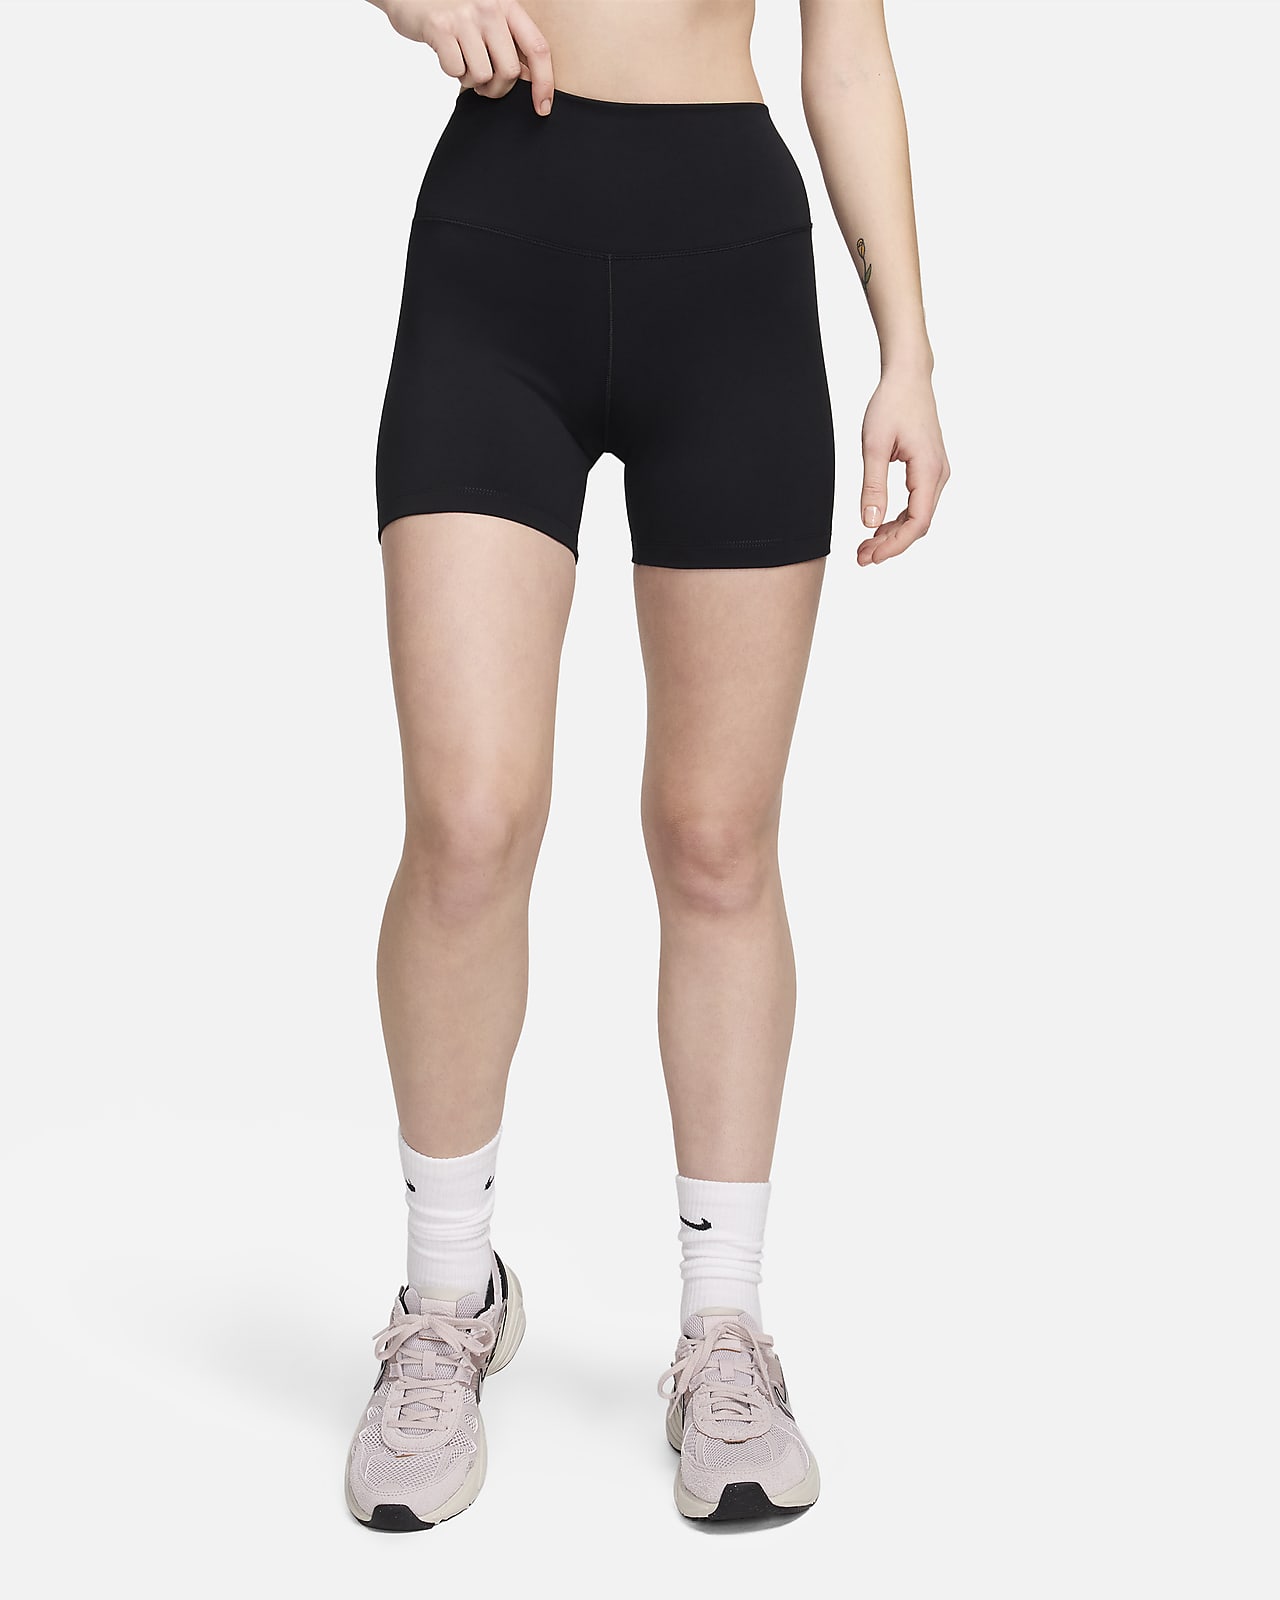 Nike One Mallas cortas de 13 cm y talle alto - Mujer